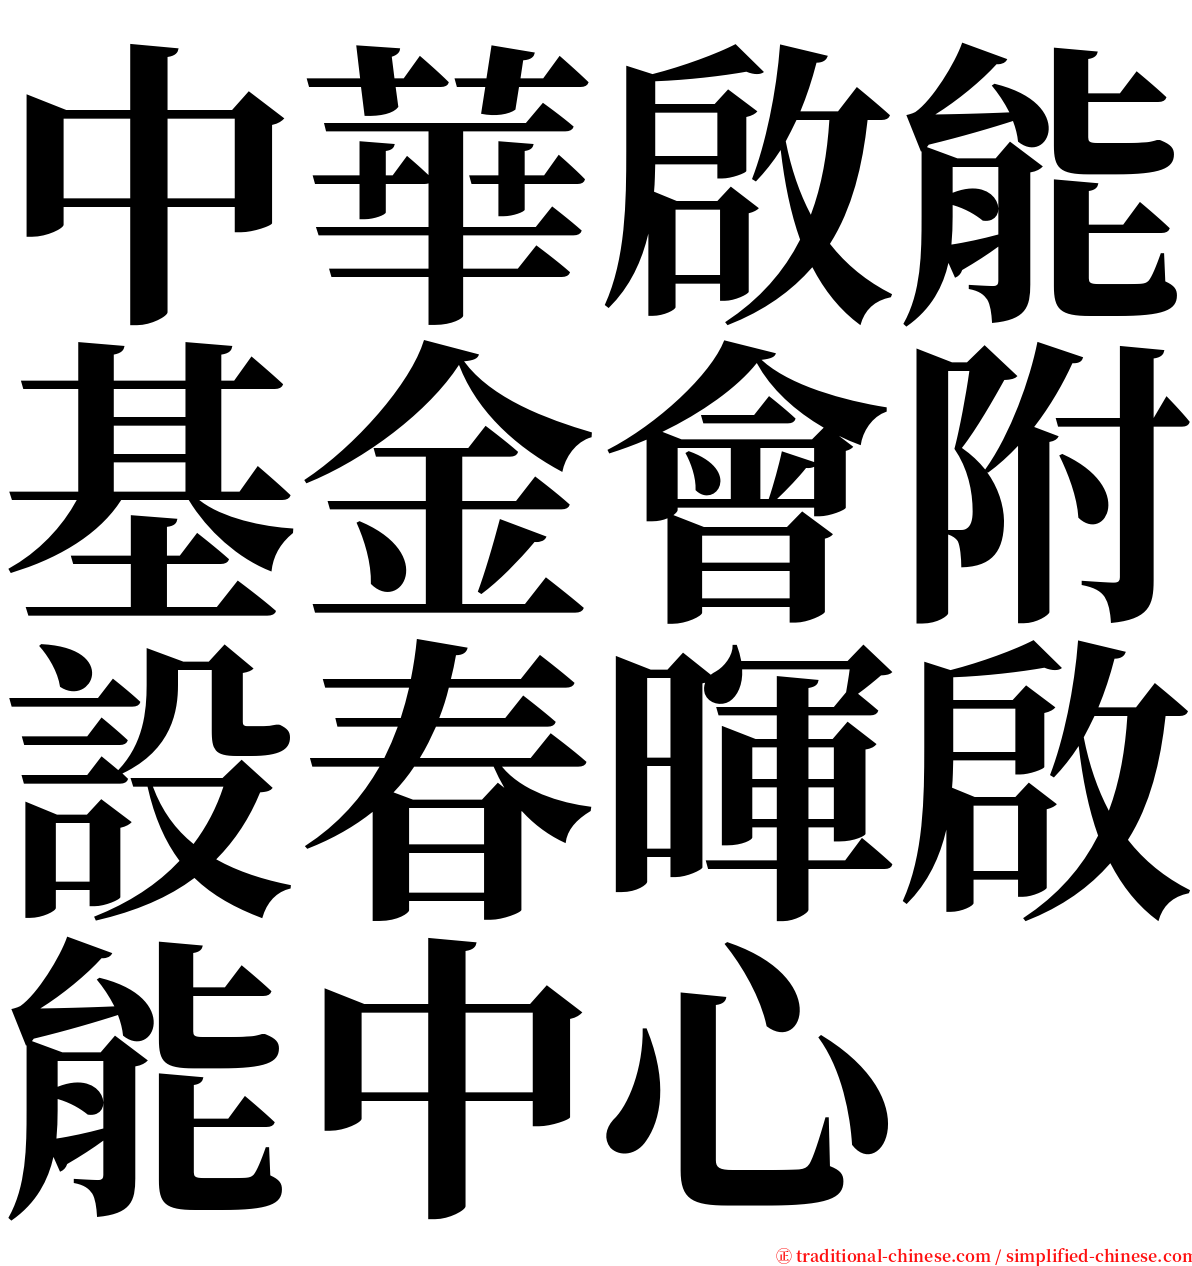 中華啟能基金會附設春暉啟能中心 serif font